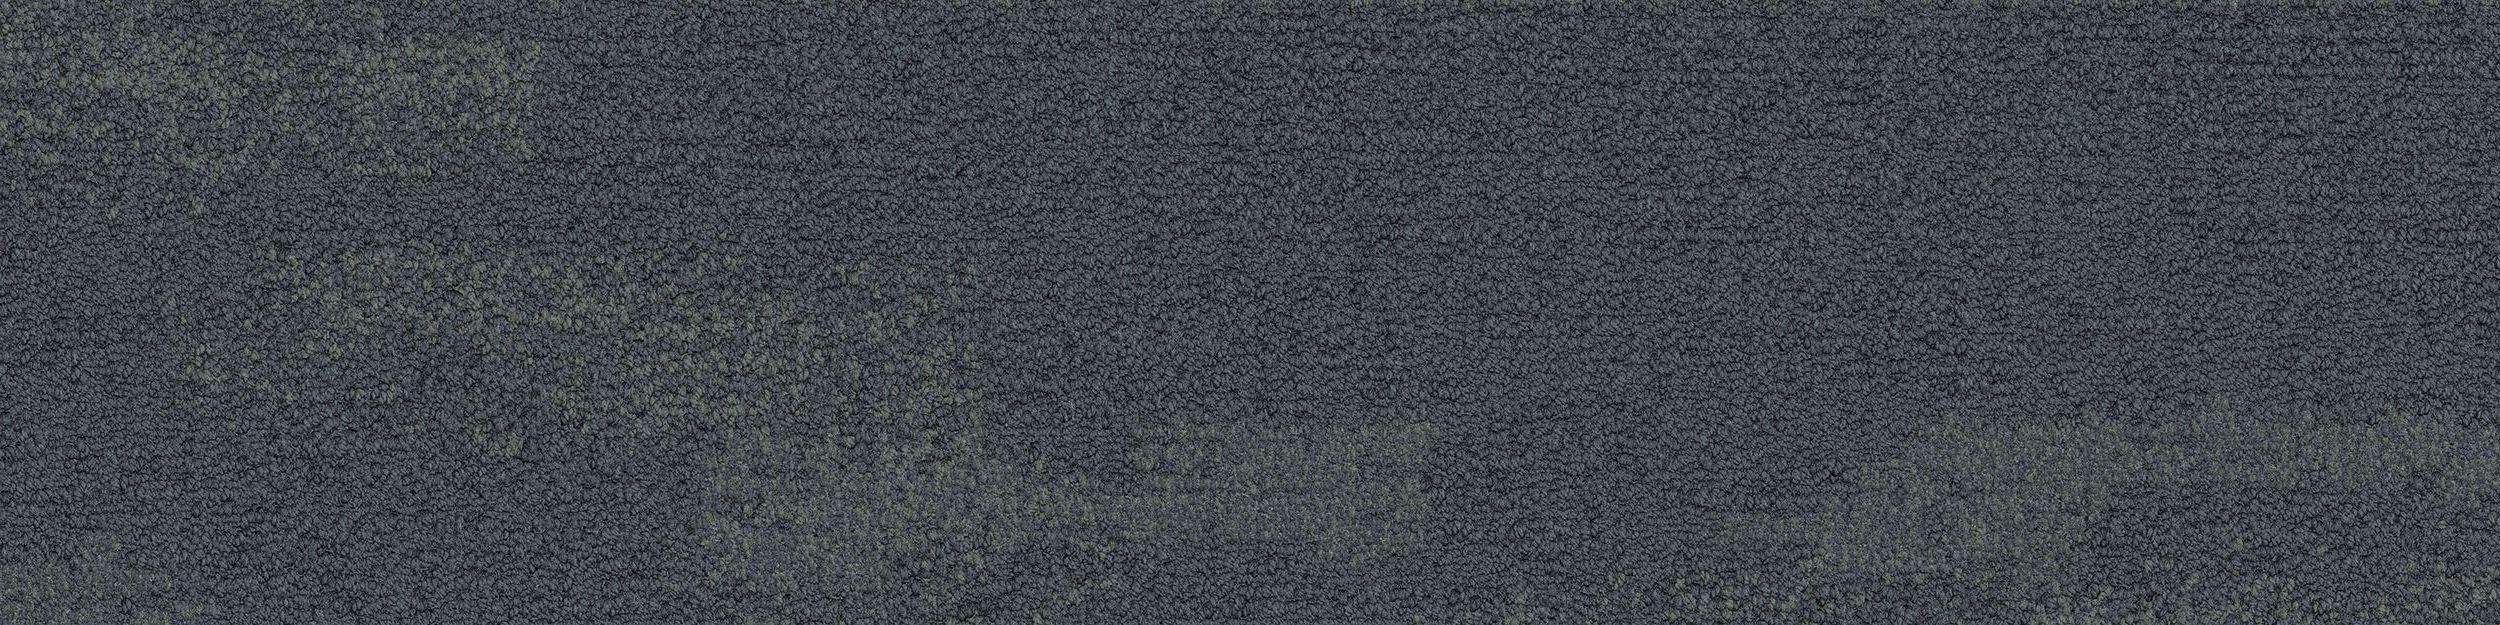 NF401 Carpet Tile In Shale image number 2